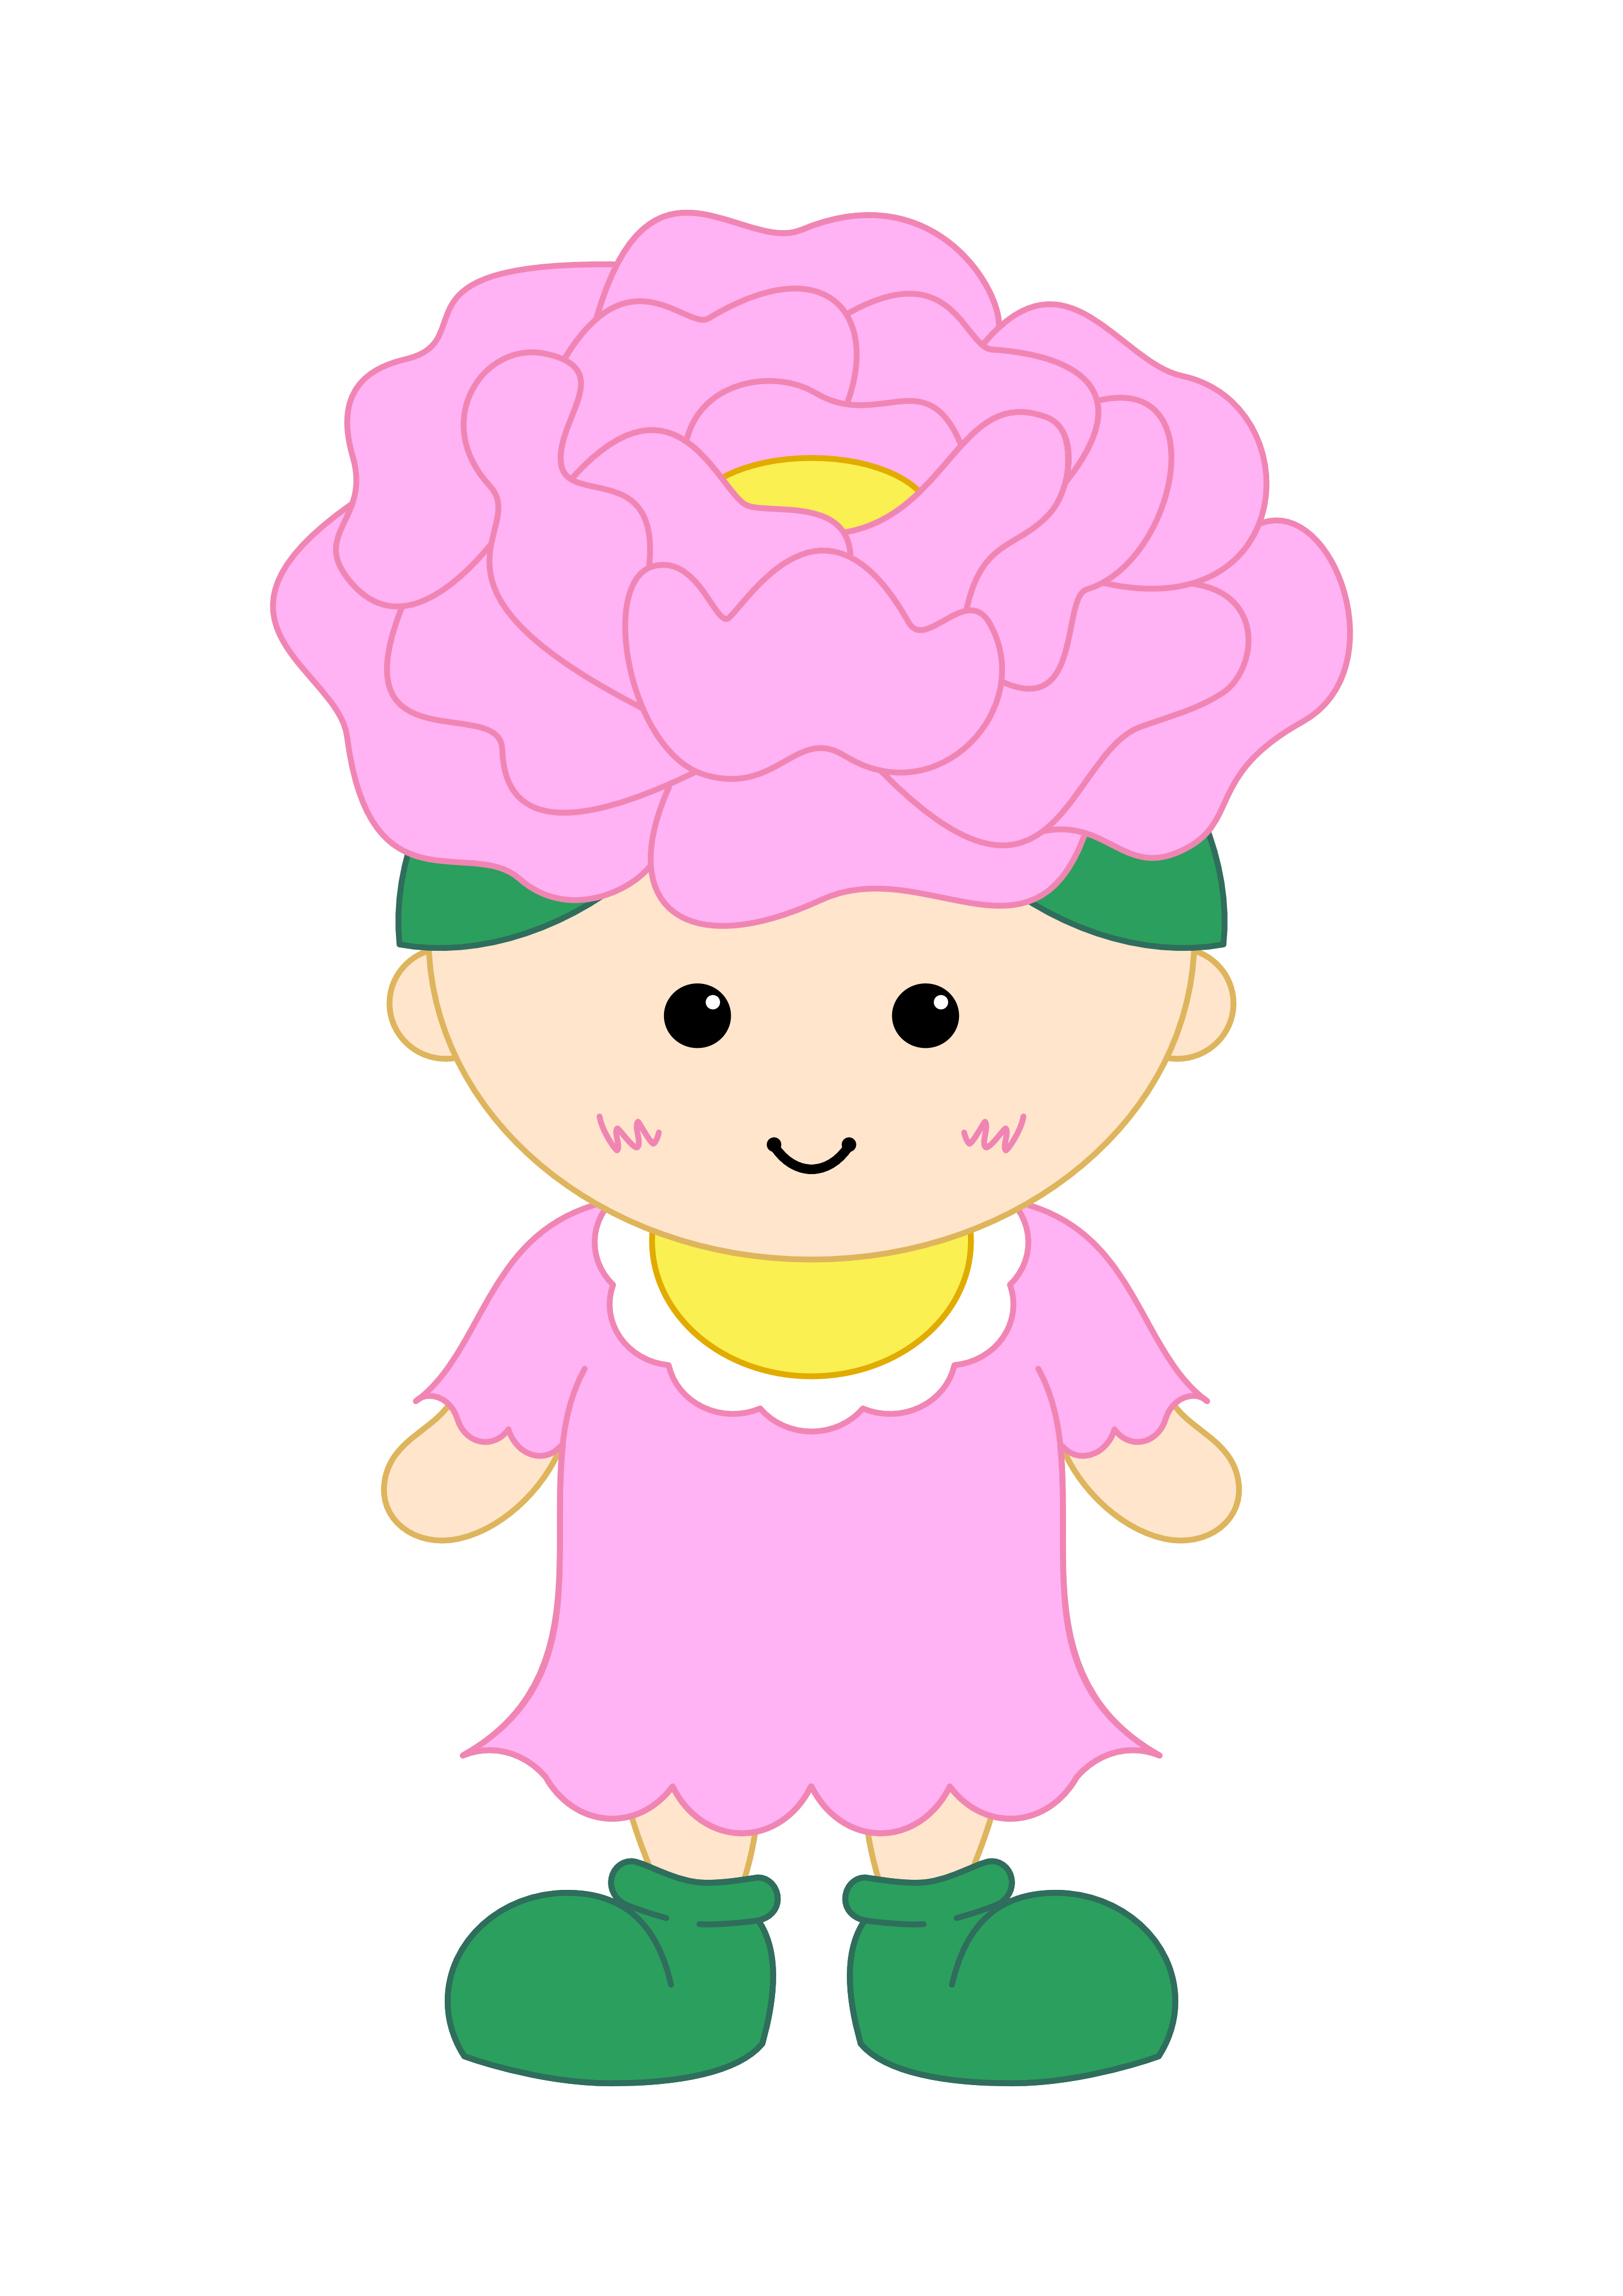 ピンク色の花の形の帽子をかぶりピンク色の服を着たマスコットキャラクターのイラスト